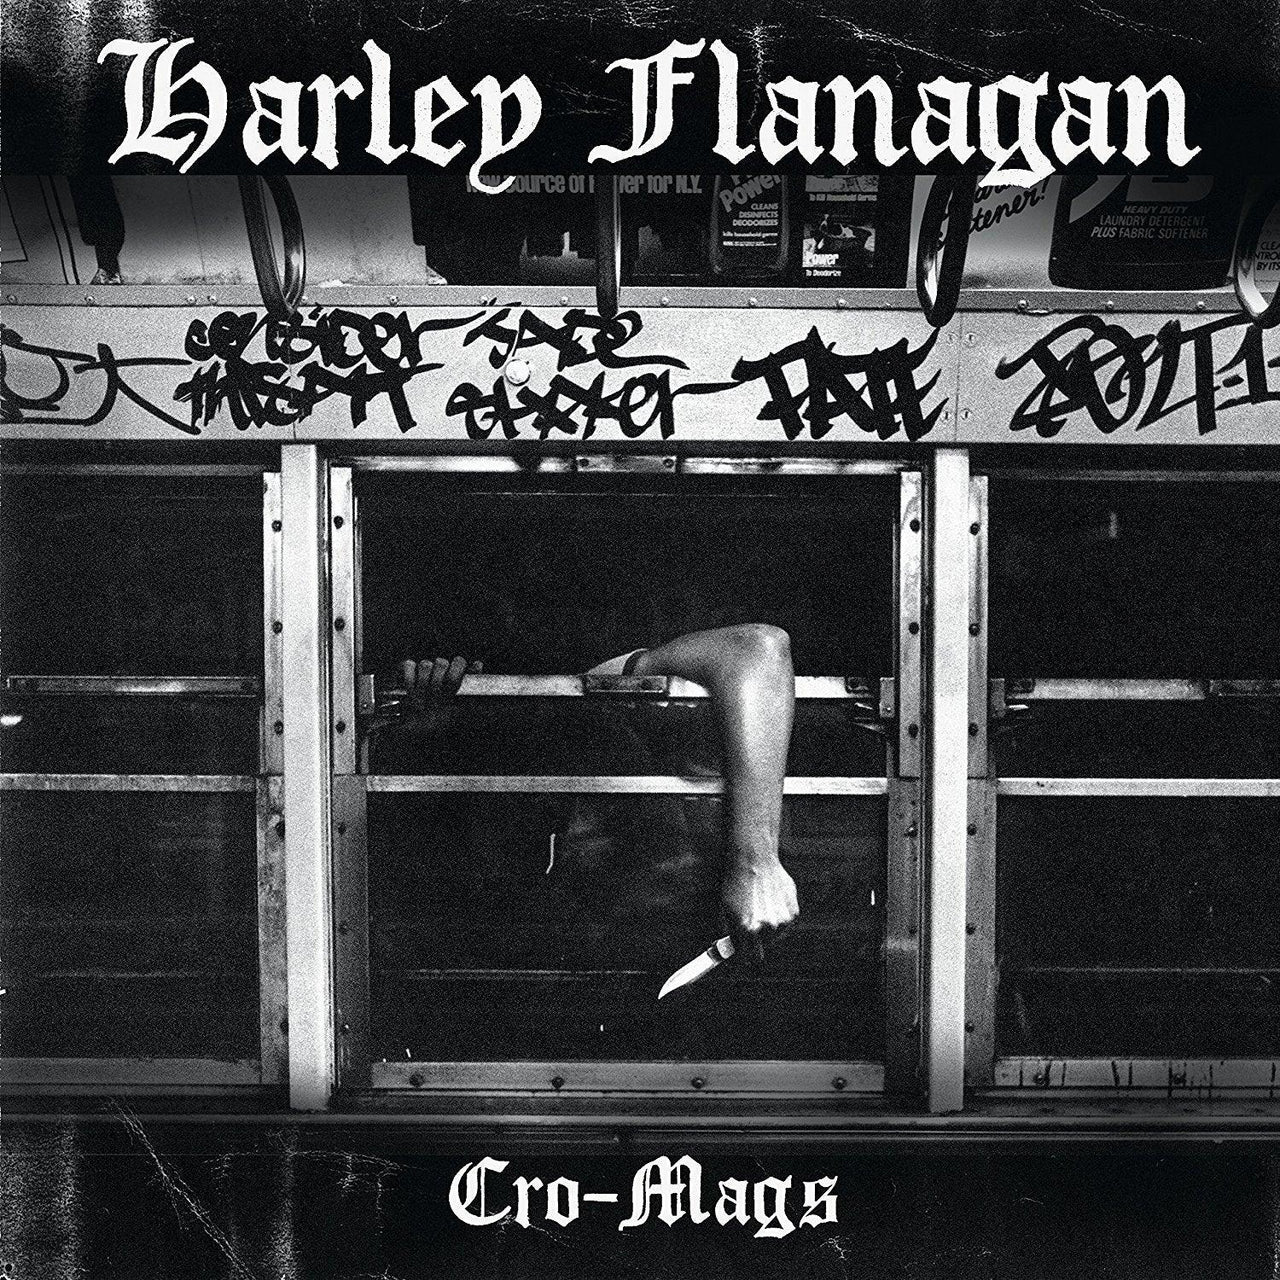 Buy – Harley Flanagan "Cro-Mags" CD – Band & Music Merch – Cold Cuts Merch